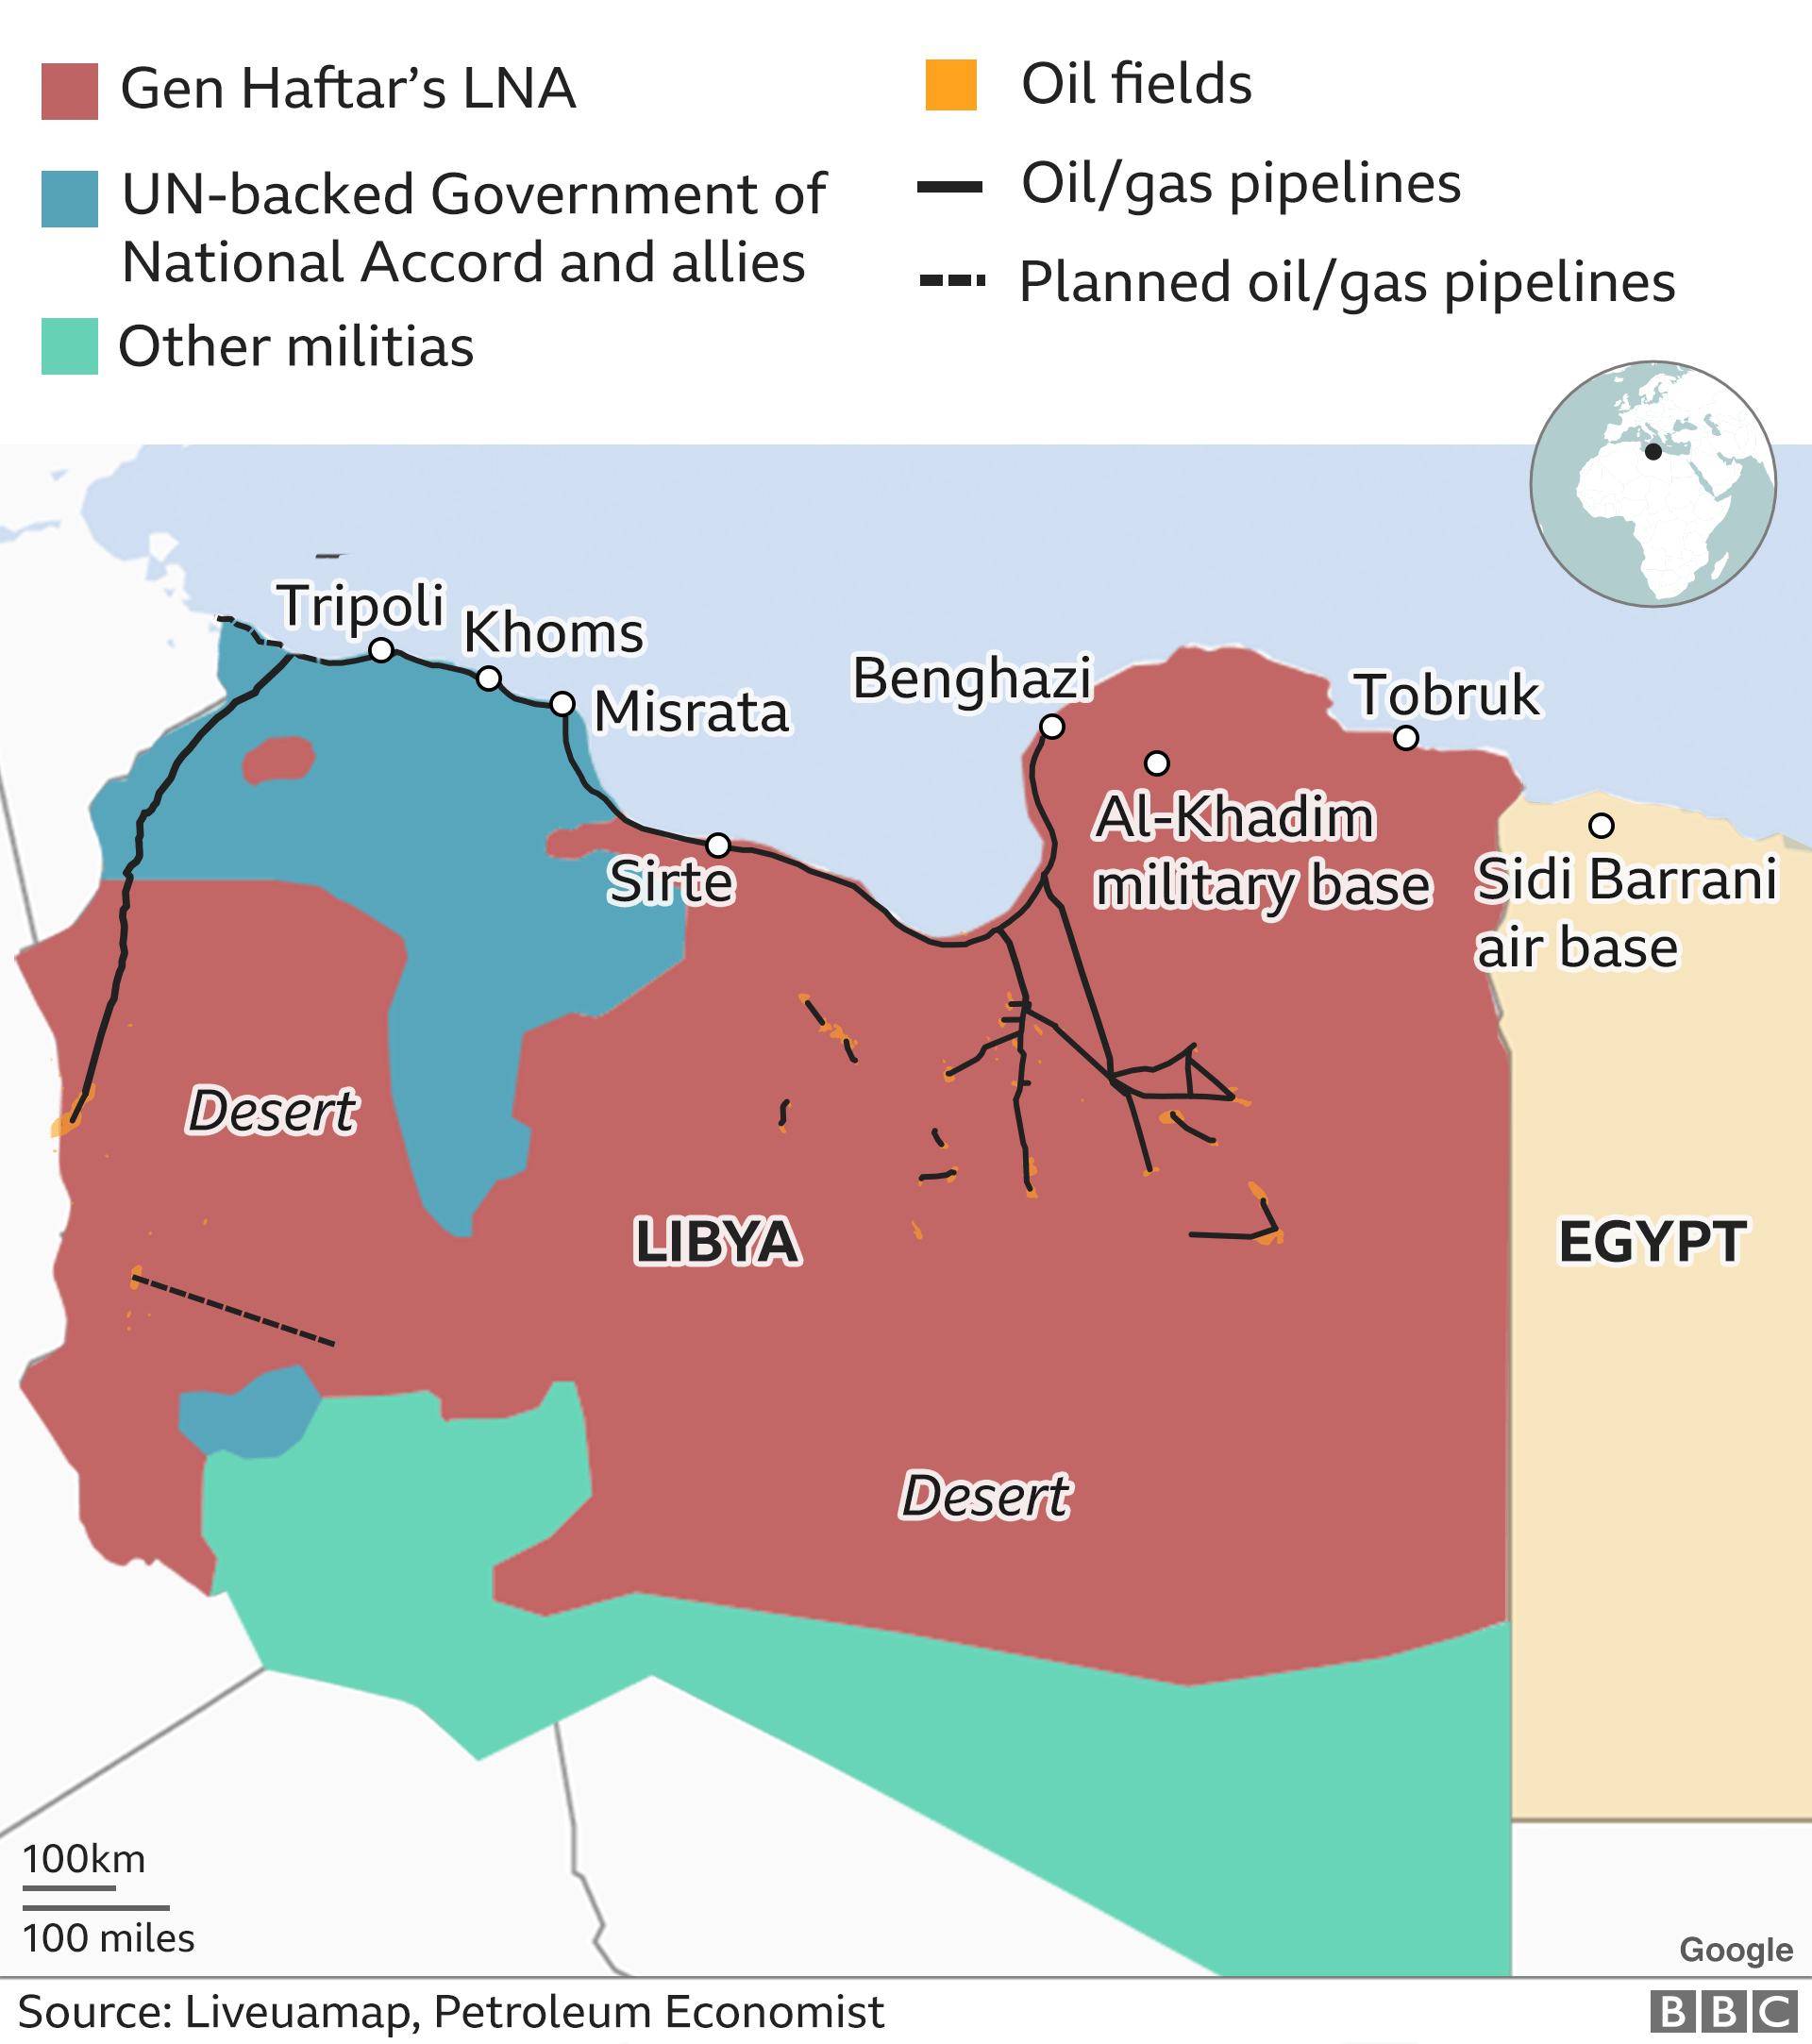   Mapa de Libia 